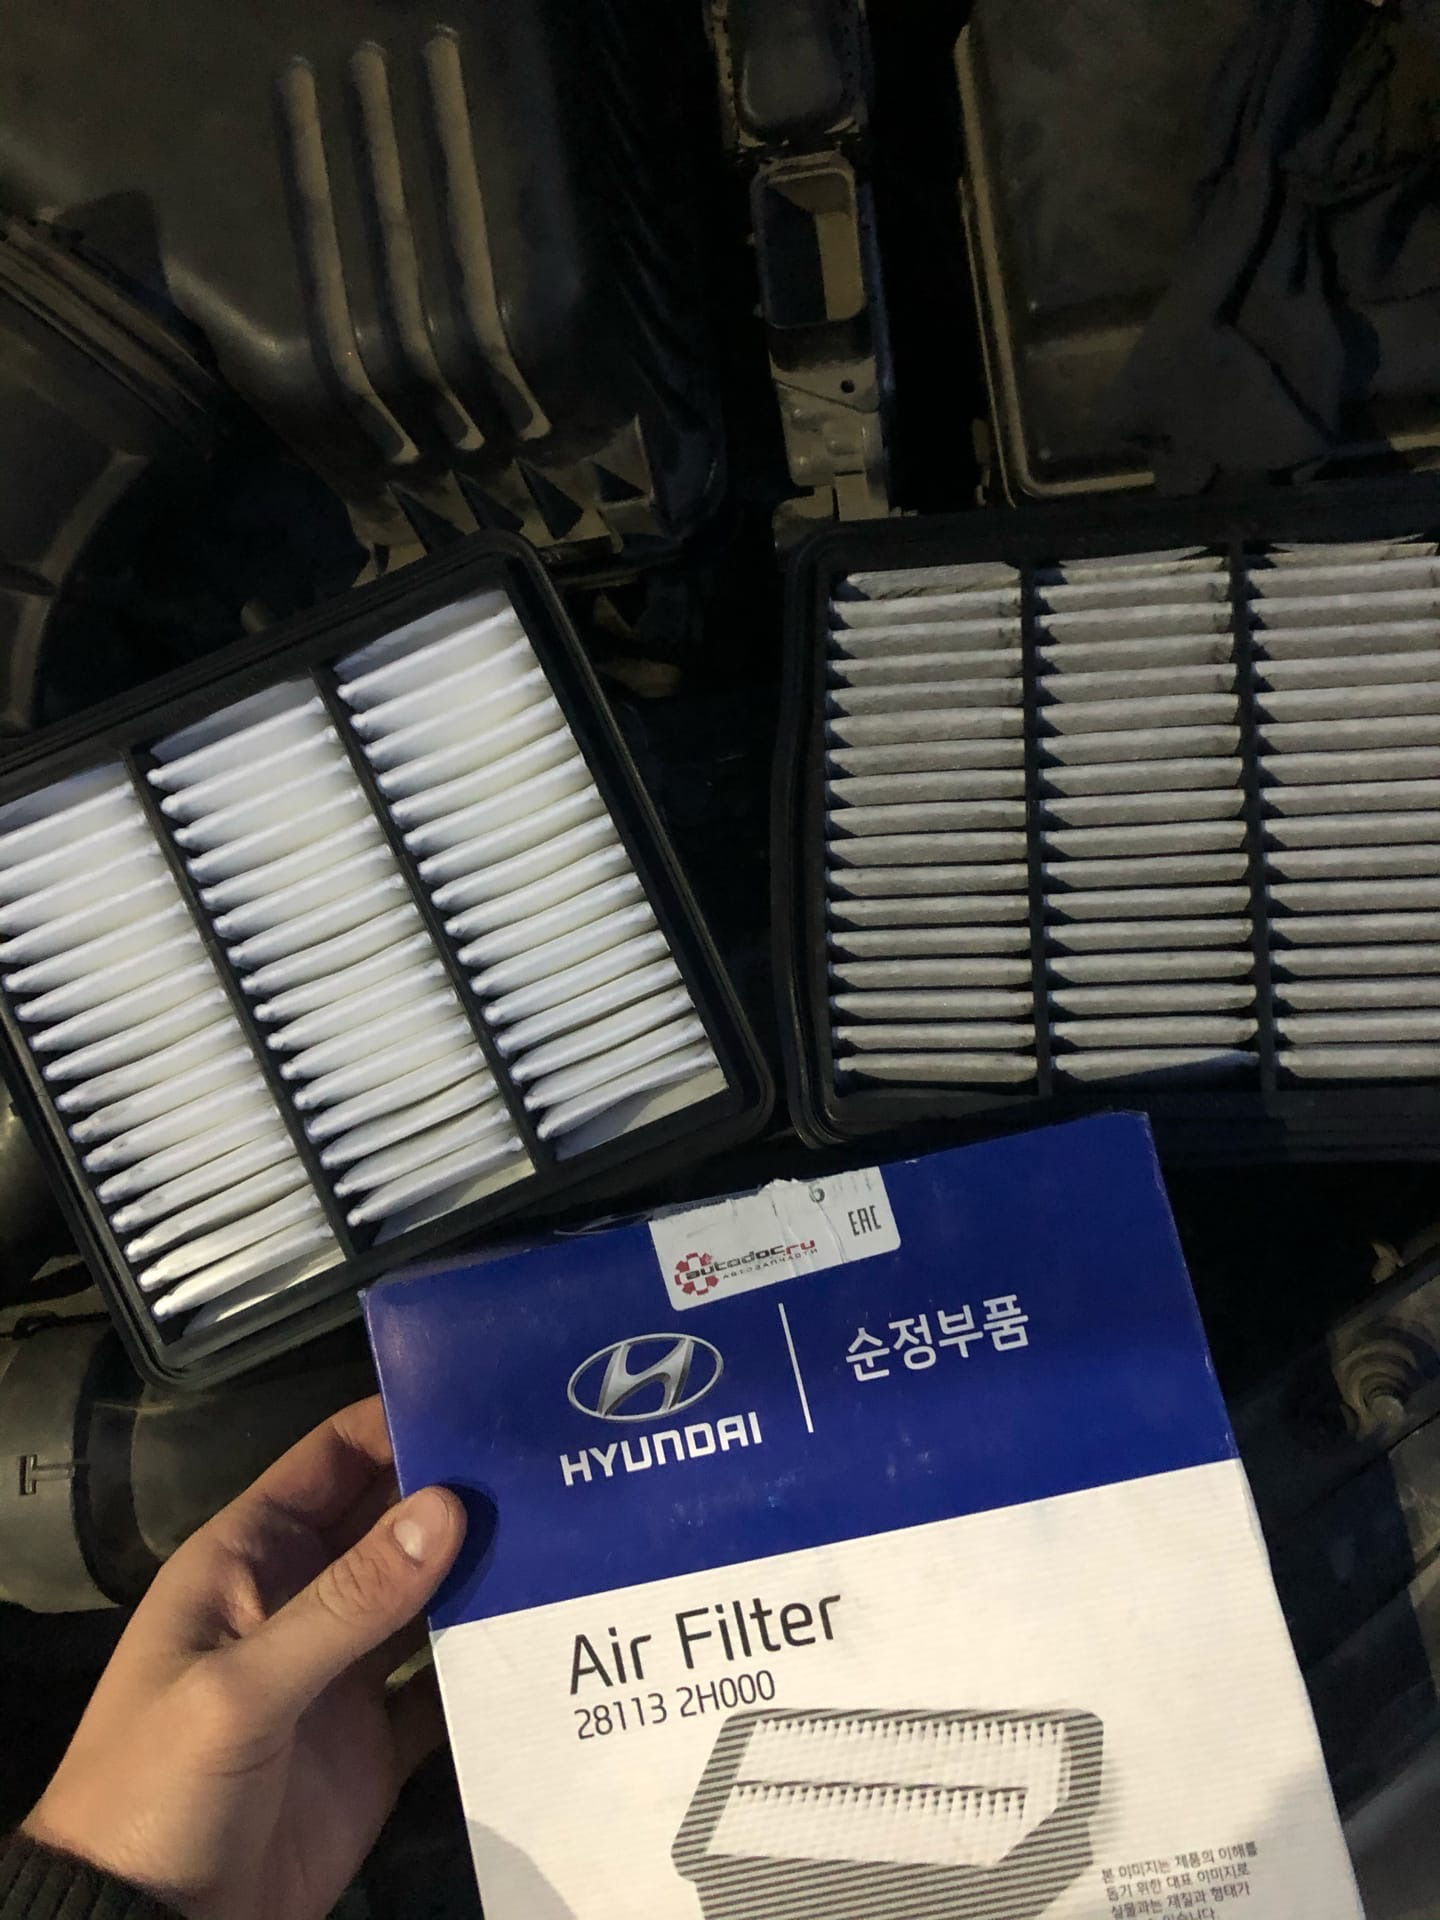 Пробег воздушного фильтра. Воздушные фильтры для Hyundai Elantra gl. 281132h000. Neoo фильтра на Хендай. Корпус пилотного фильтра Хендай.